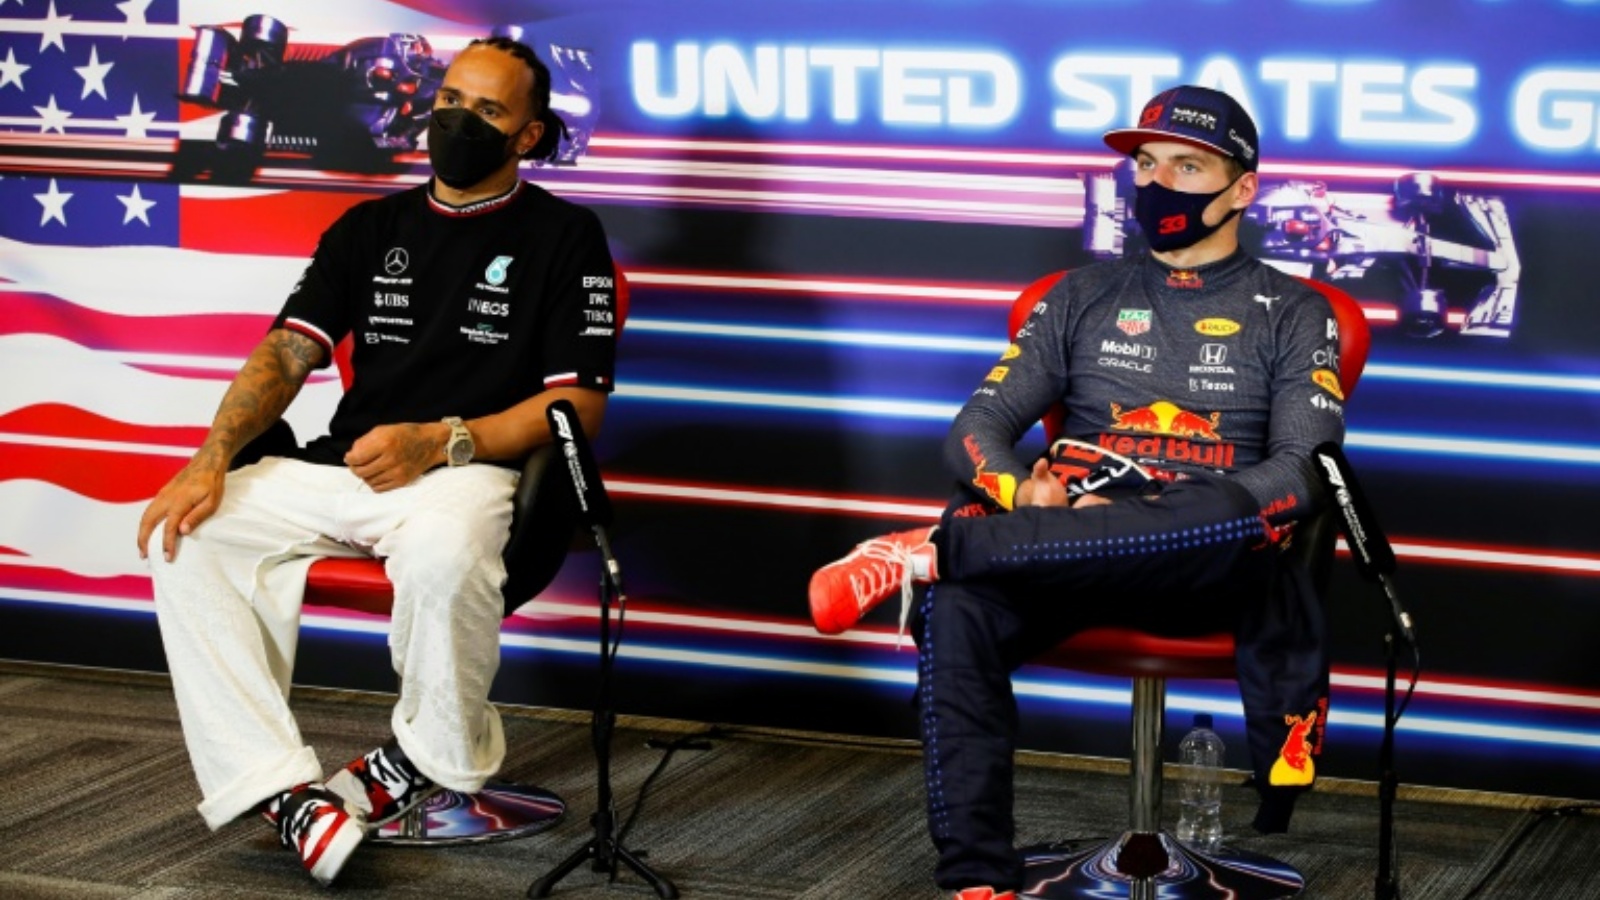 سائق مرسيدس البريطاني لويس هاميلتون (يسار) يجلس إلى جانب سائق ريد بول الهولندي ماكس فيرستابن خلال مؤتمر صحافي عشية جائزة الولايات المتحدة لسباقات فورمولا واحد. 24 تشرين الأول/أكتوبر 2021.